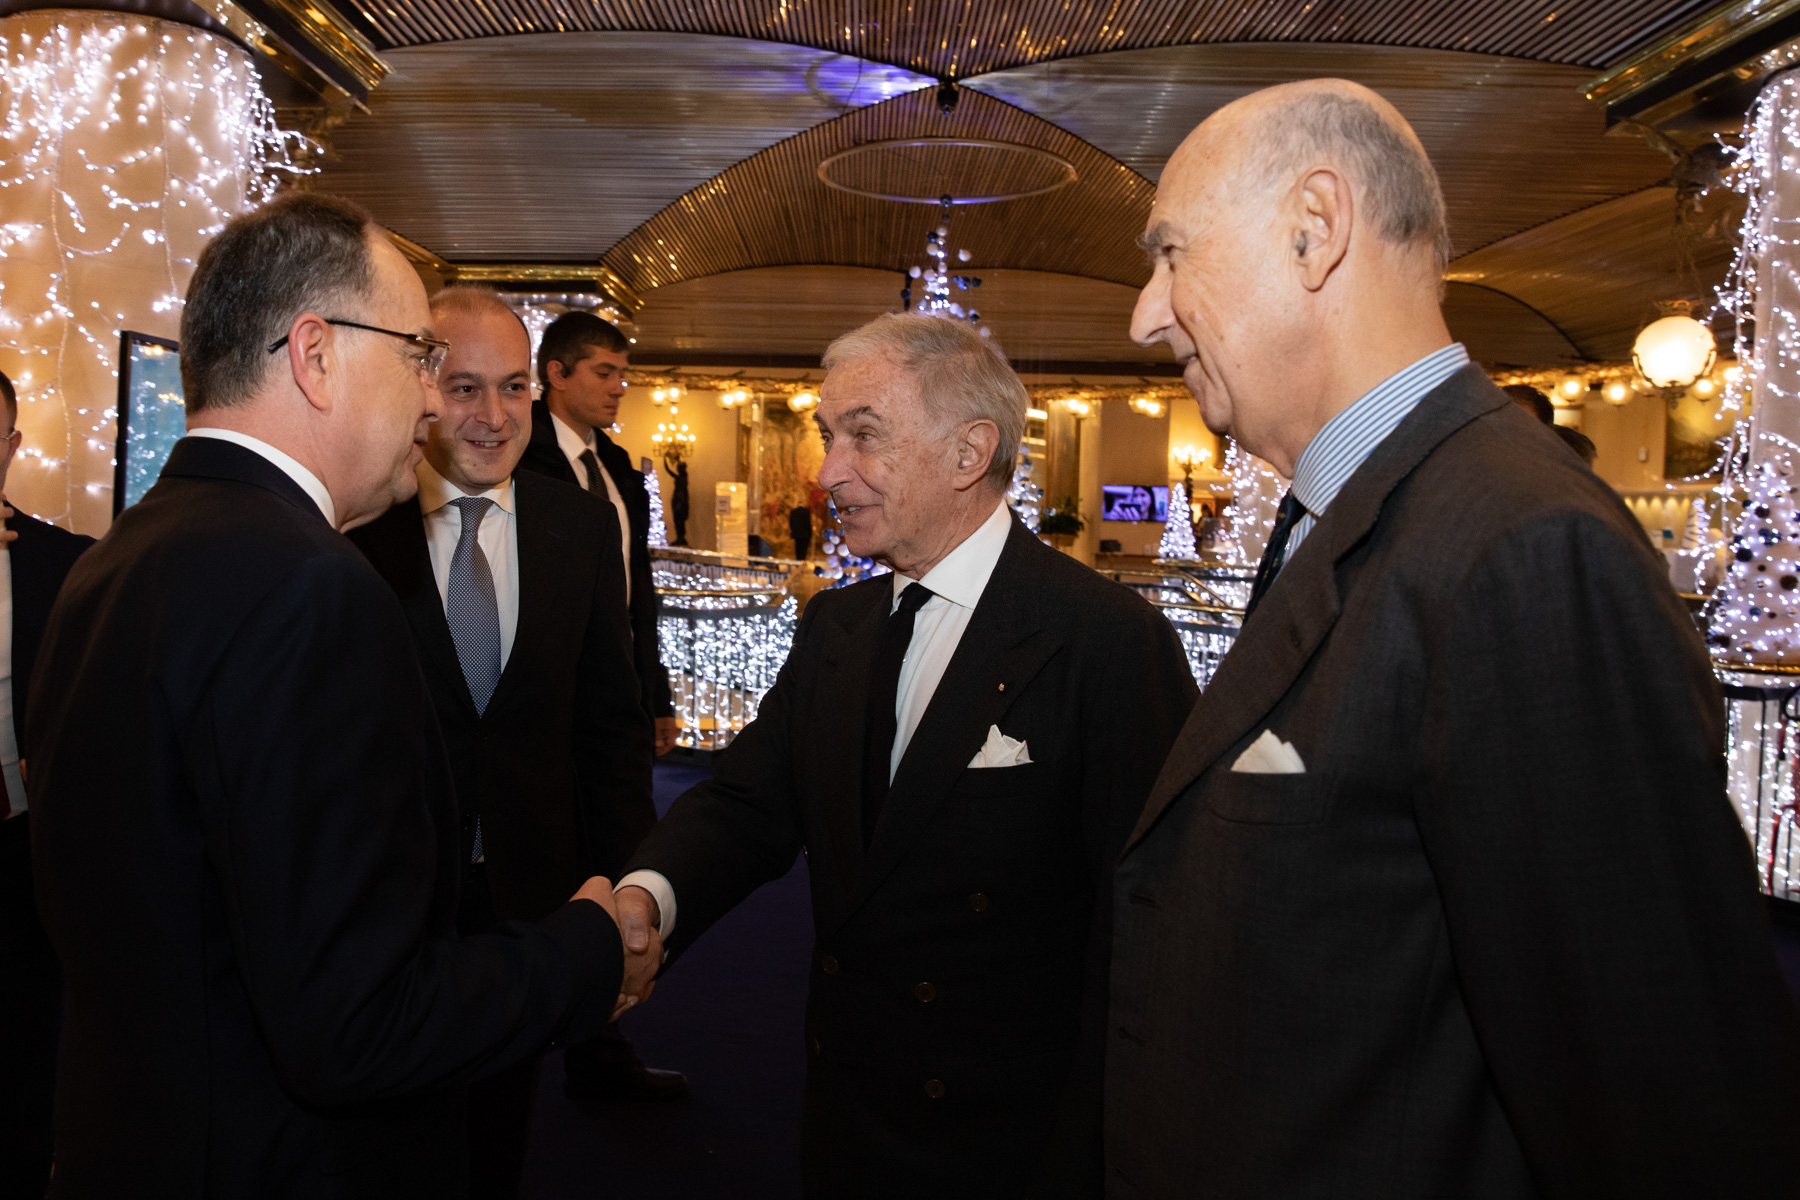 Der Statthalter des Großmeisters trifft albanischen Präsidenten Bajram Begaj